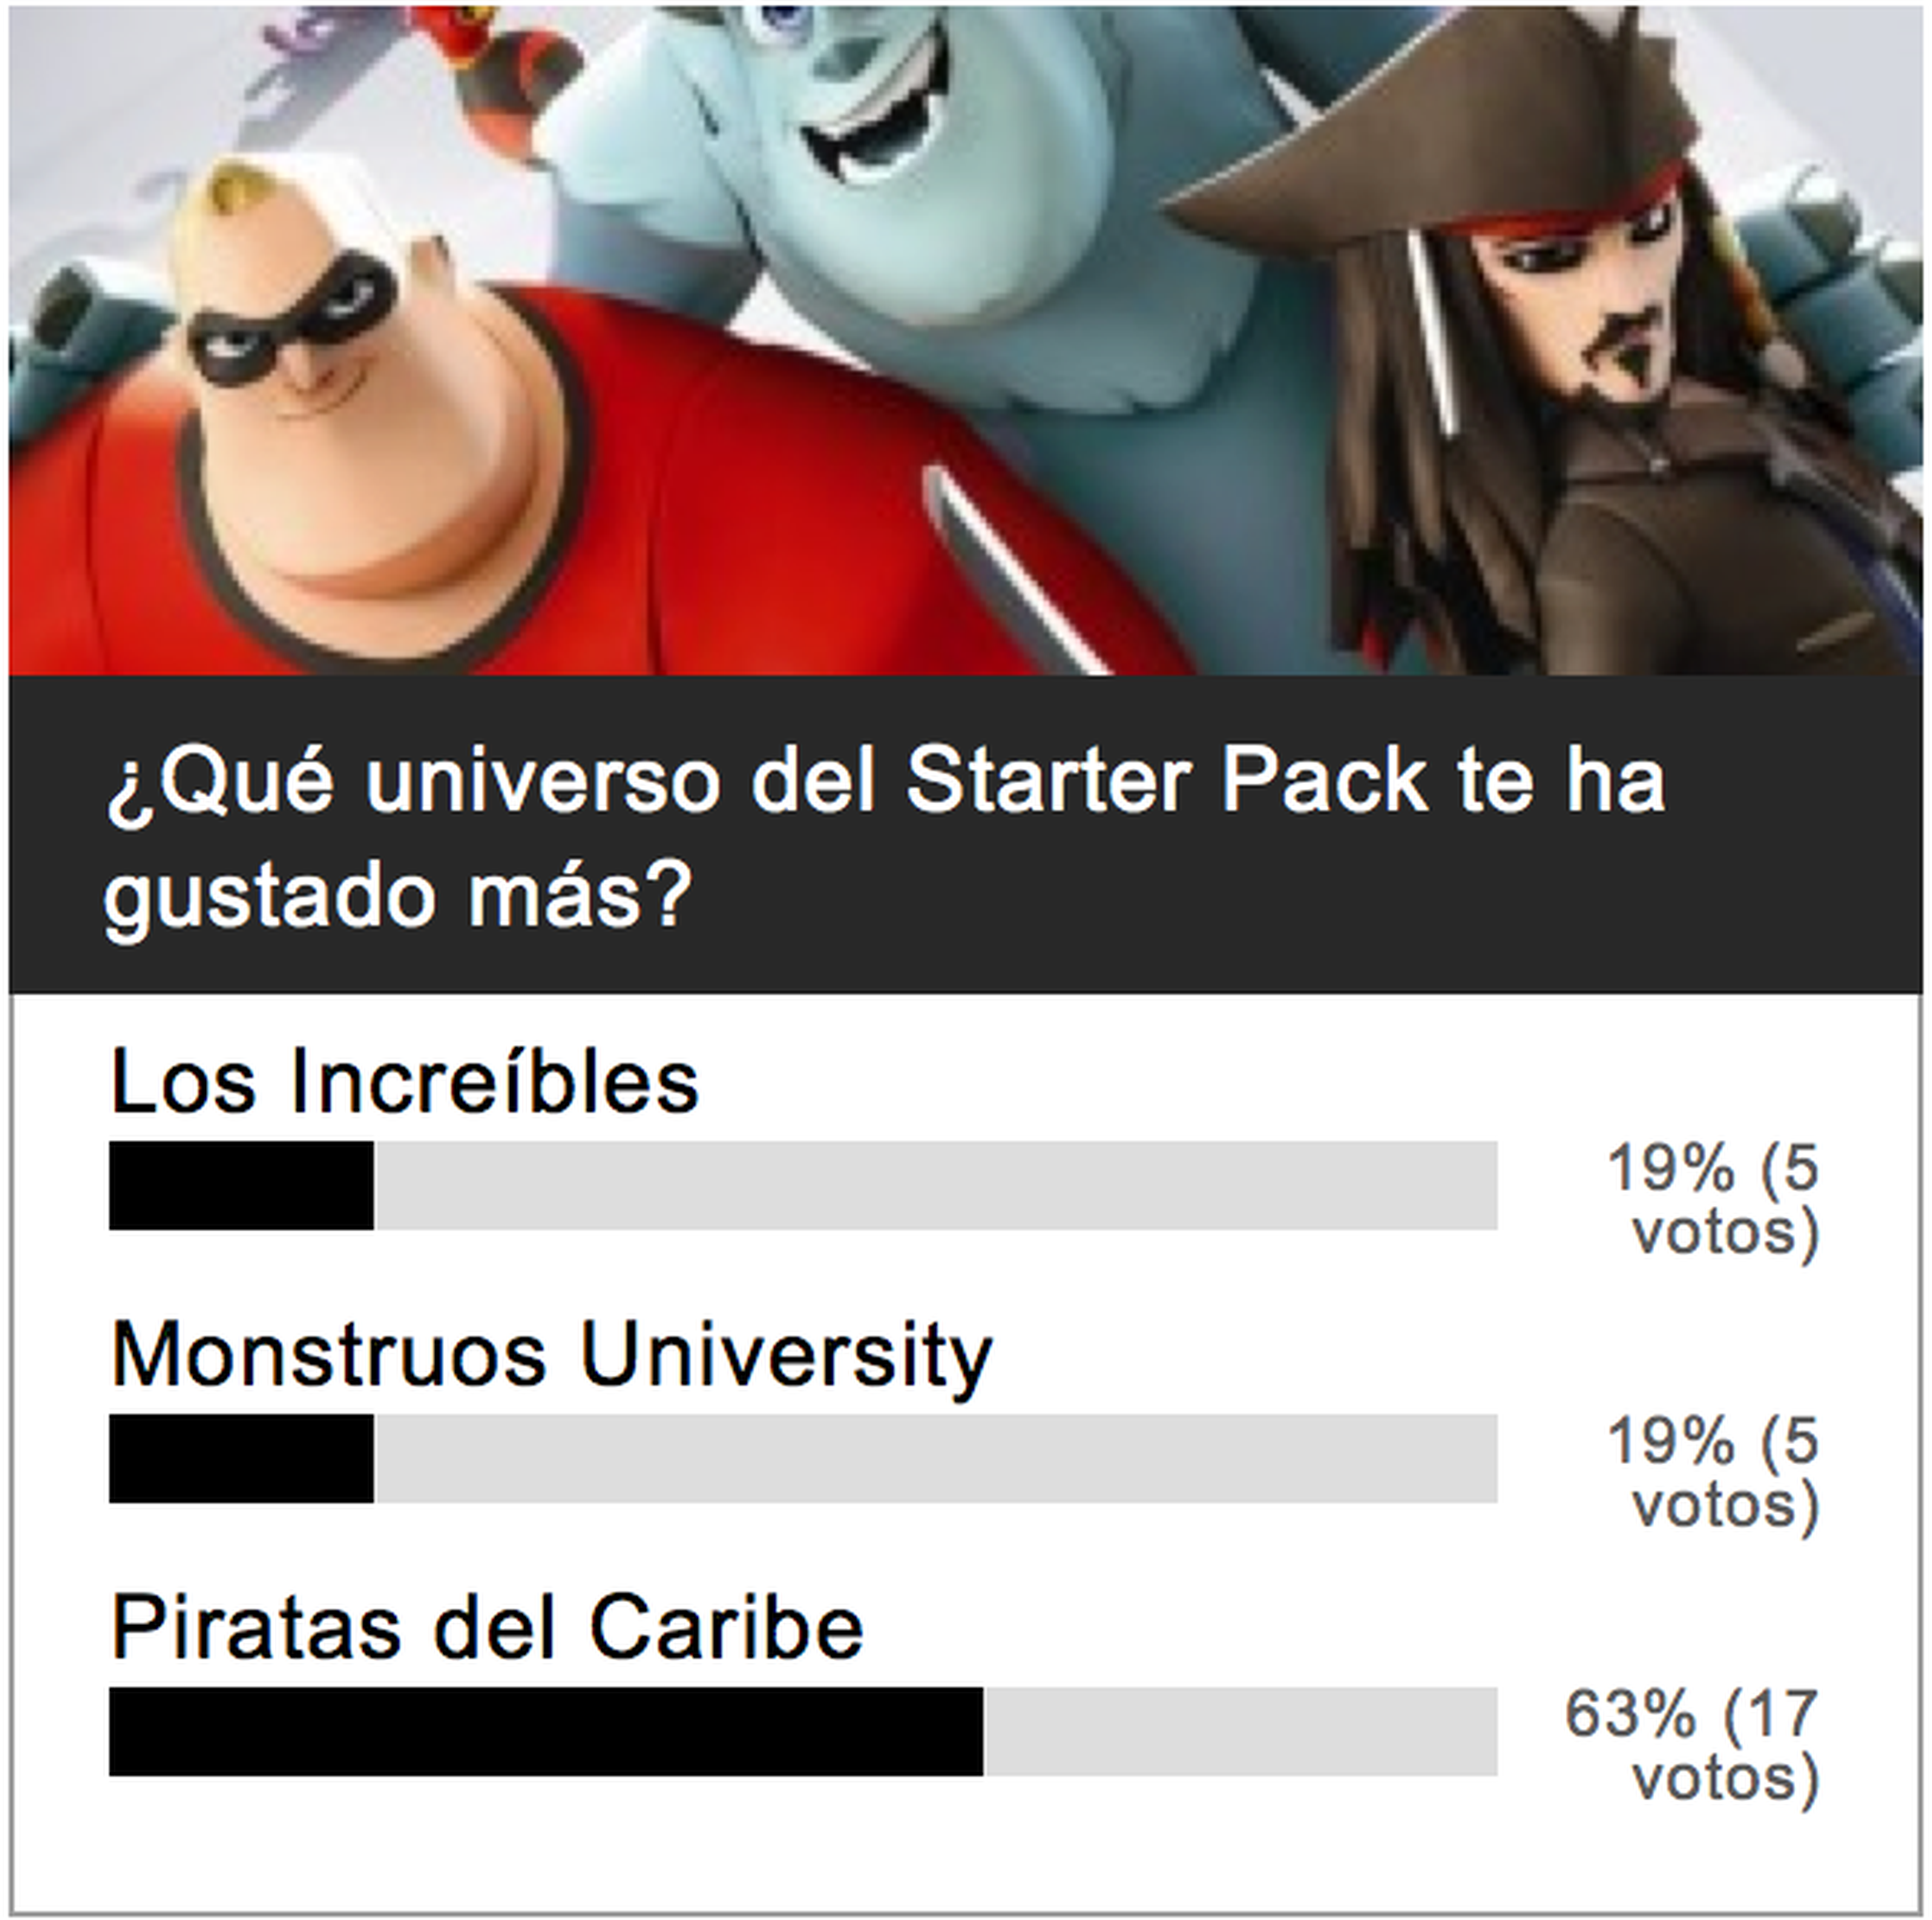 Encuesta: Piratas del Caribe favorito del Starter Pack